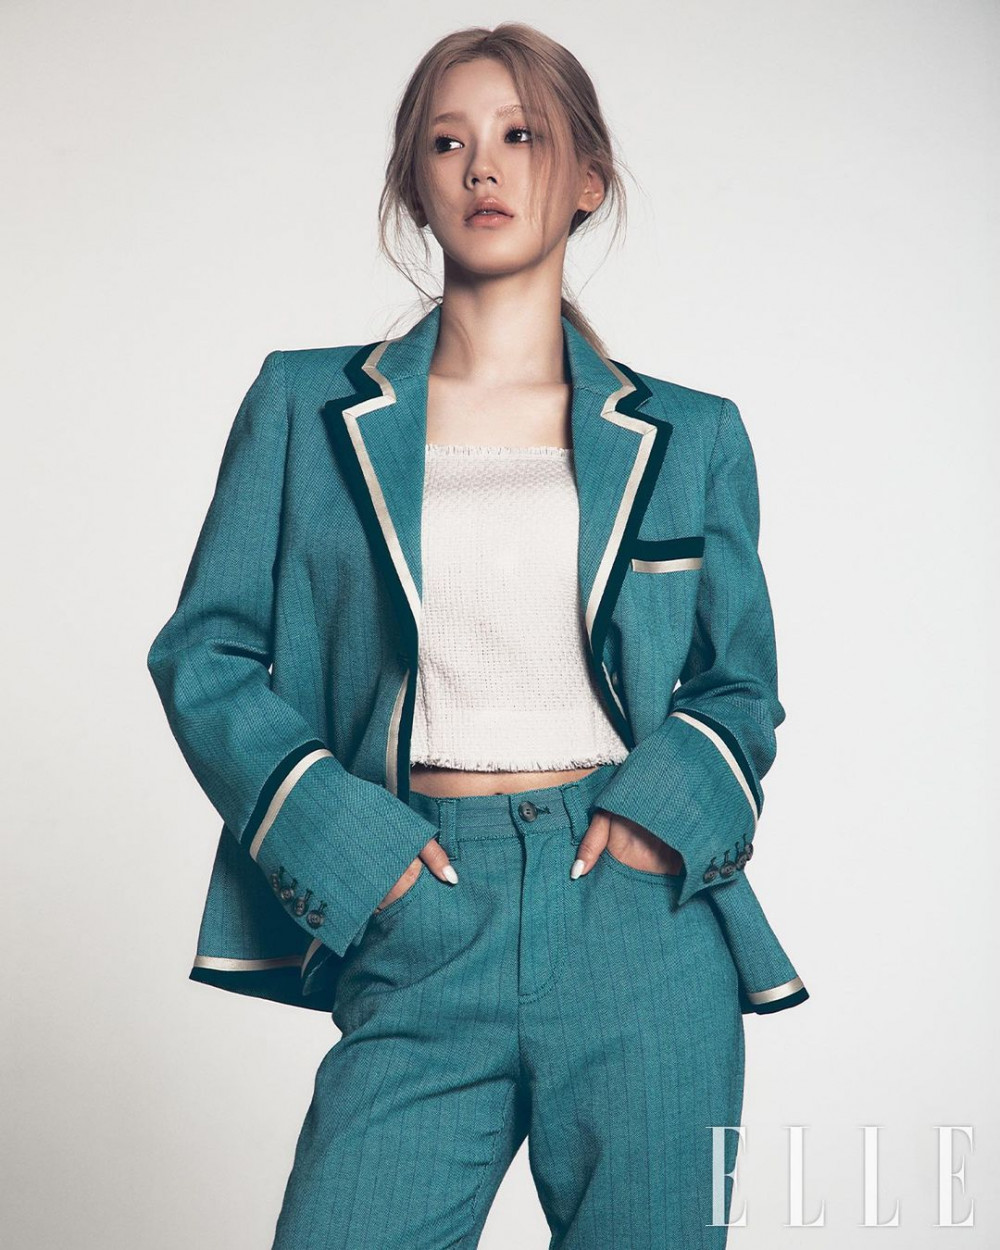 Миён из (G)I-DLE рассказала о работе над своим сольным дебютным альбомом для журнала «Elle»